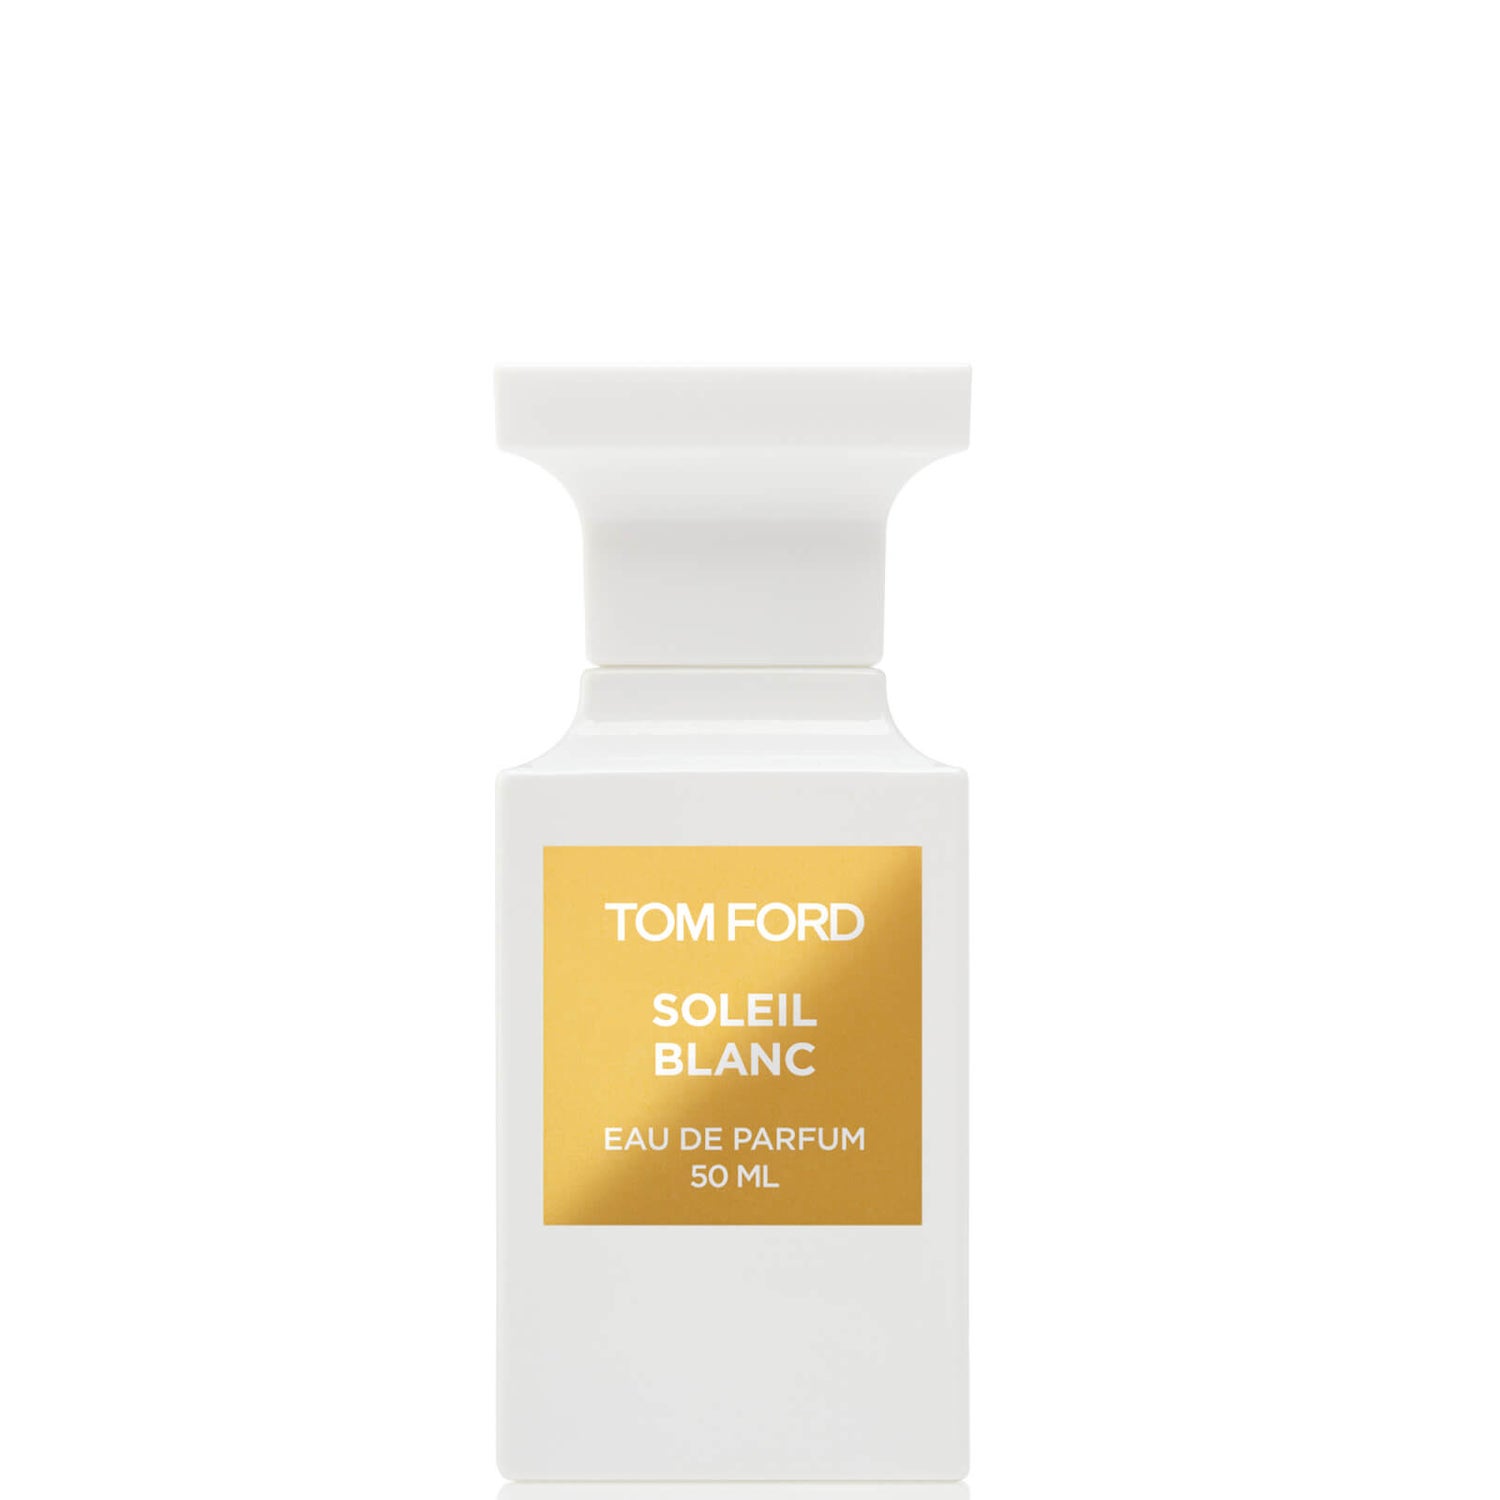 Tom Ford Soleil Blanc Eau de Parfum Spray 50ml - LOOKFANTASTIC